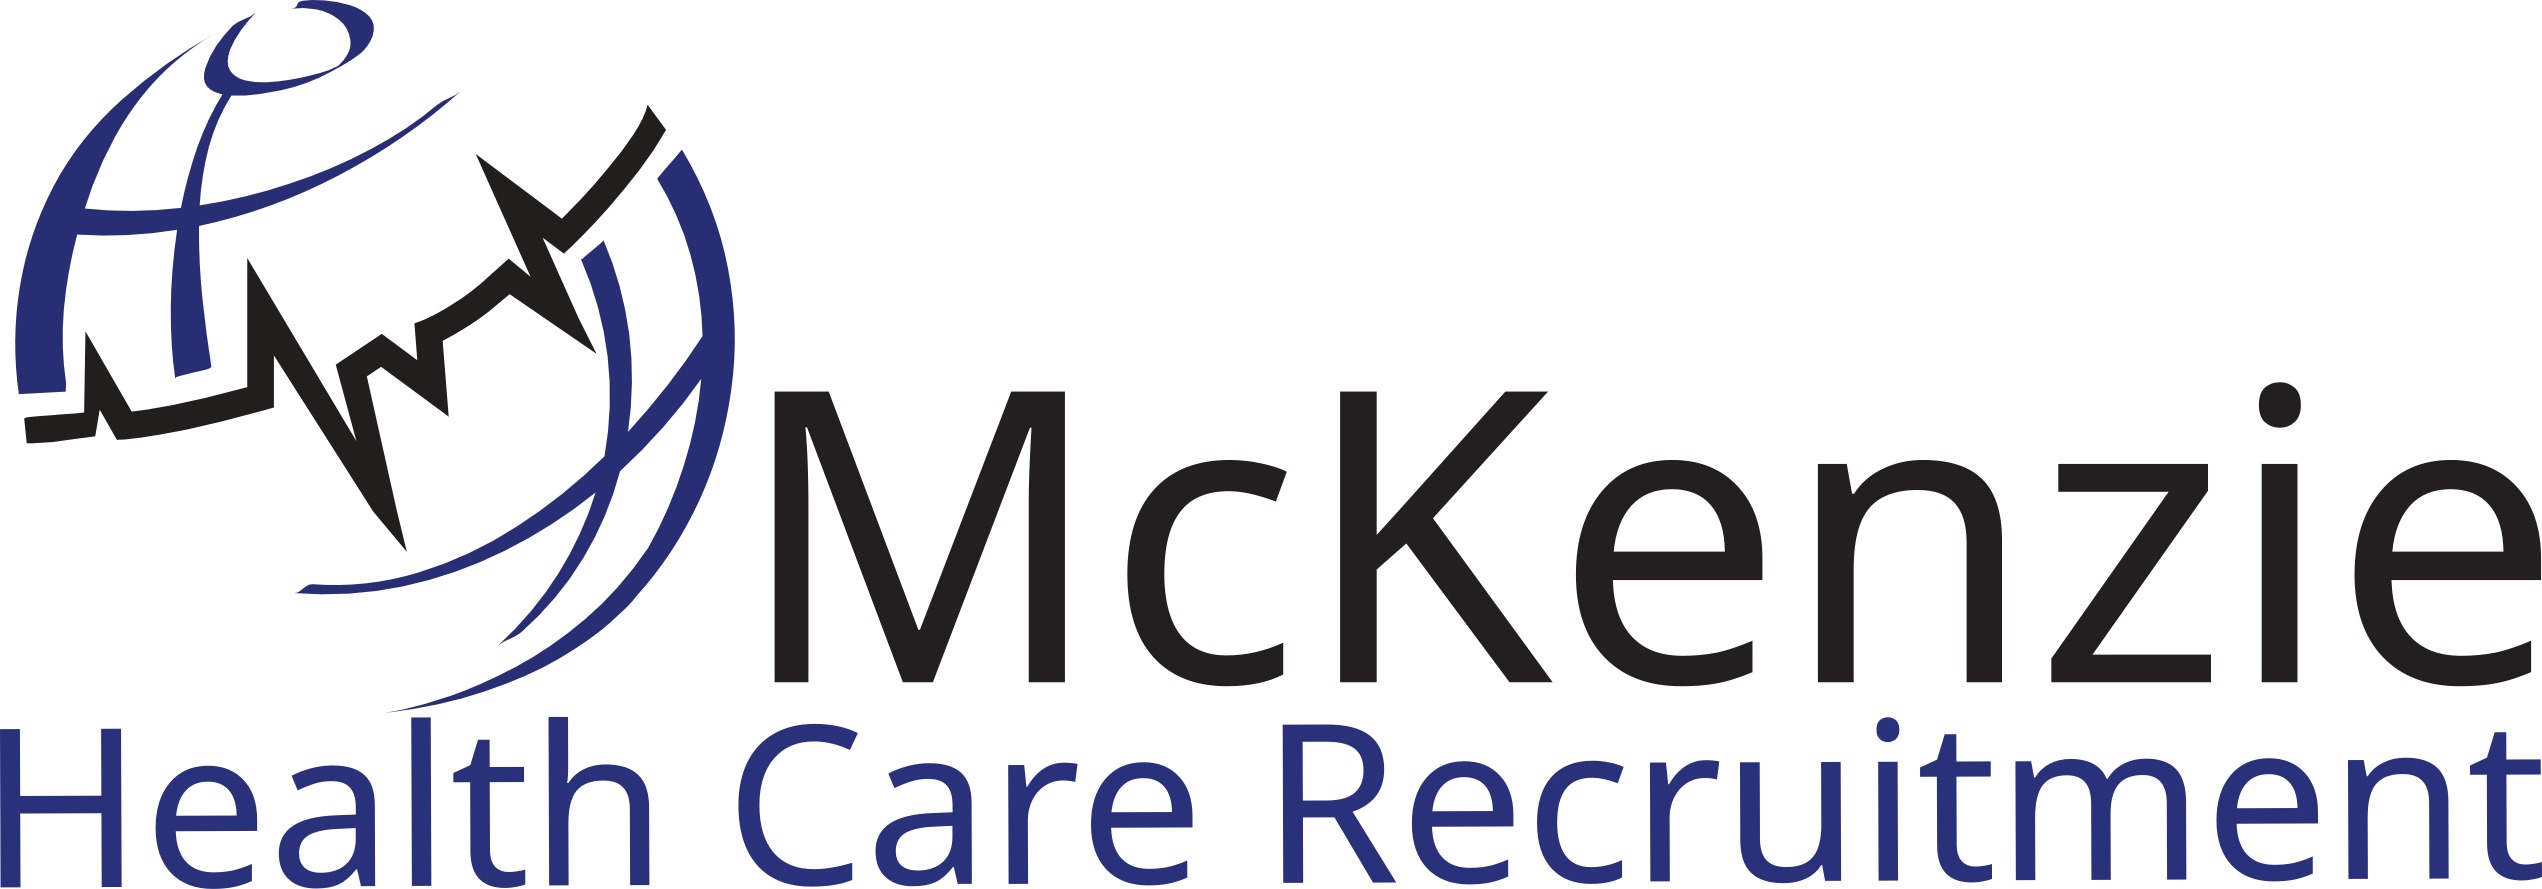 https://ca.mncjobz.com/company/mckenzie-health-care-recruitment